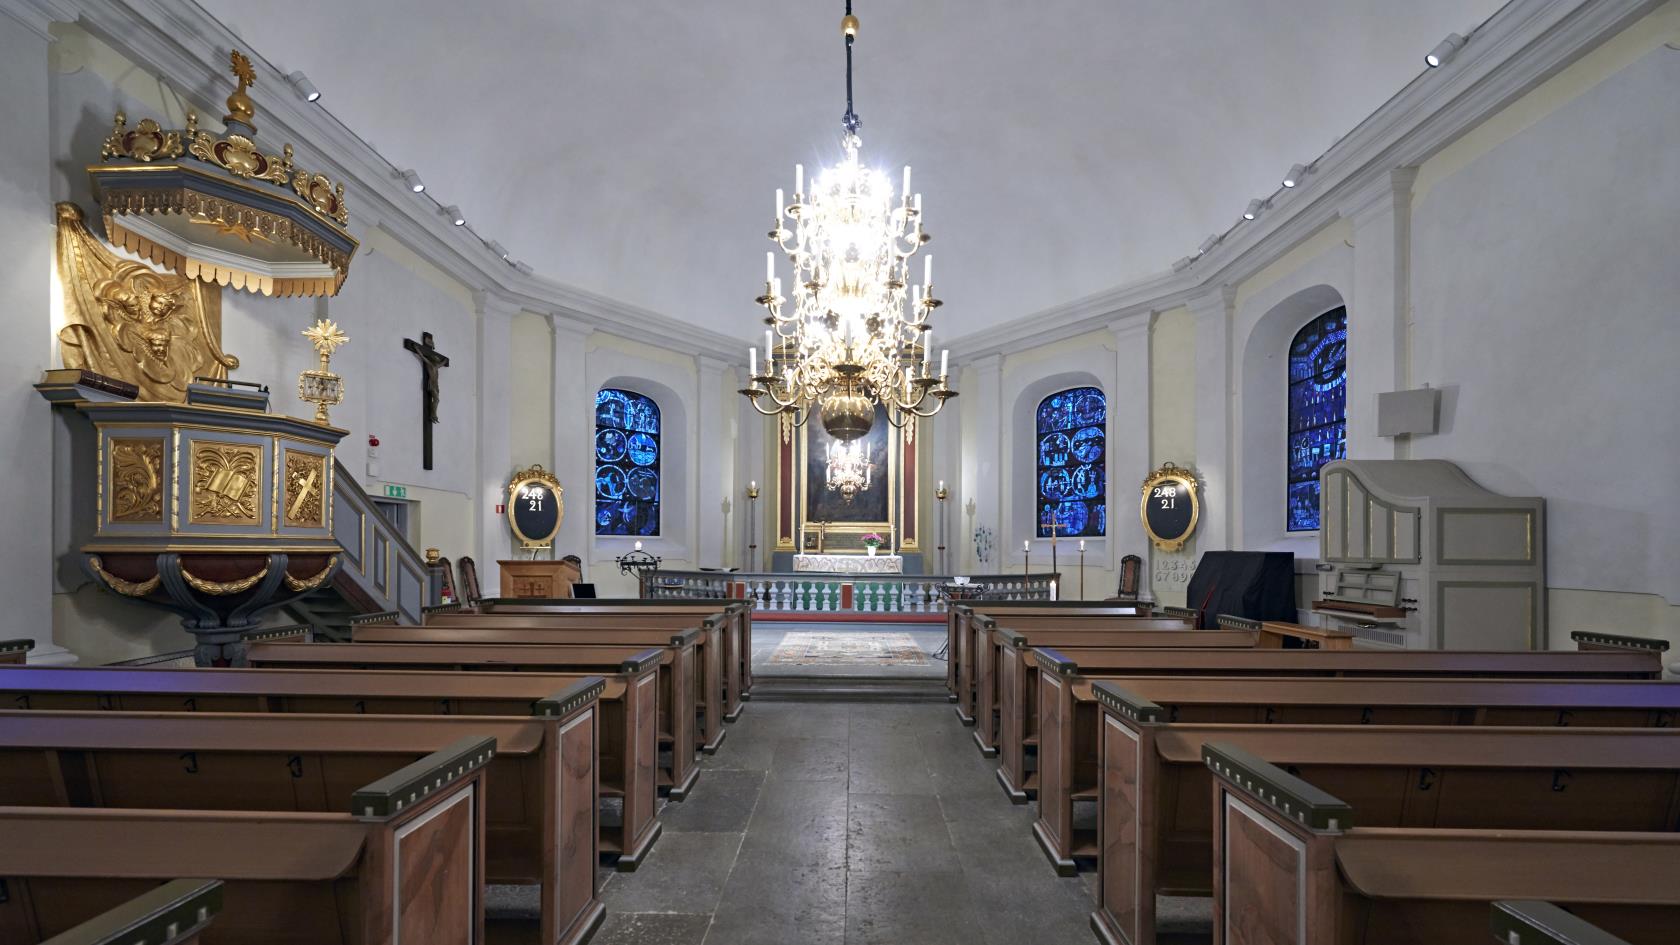 Mjölby kyrka invändigt. Altargången med kyrkbänkar. Till vänster syns predikstolen och längst fram altaret.